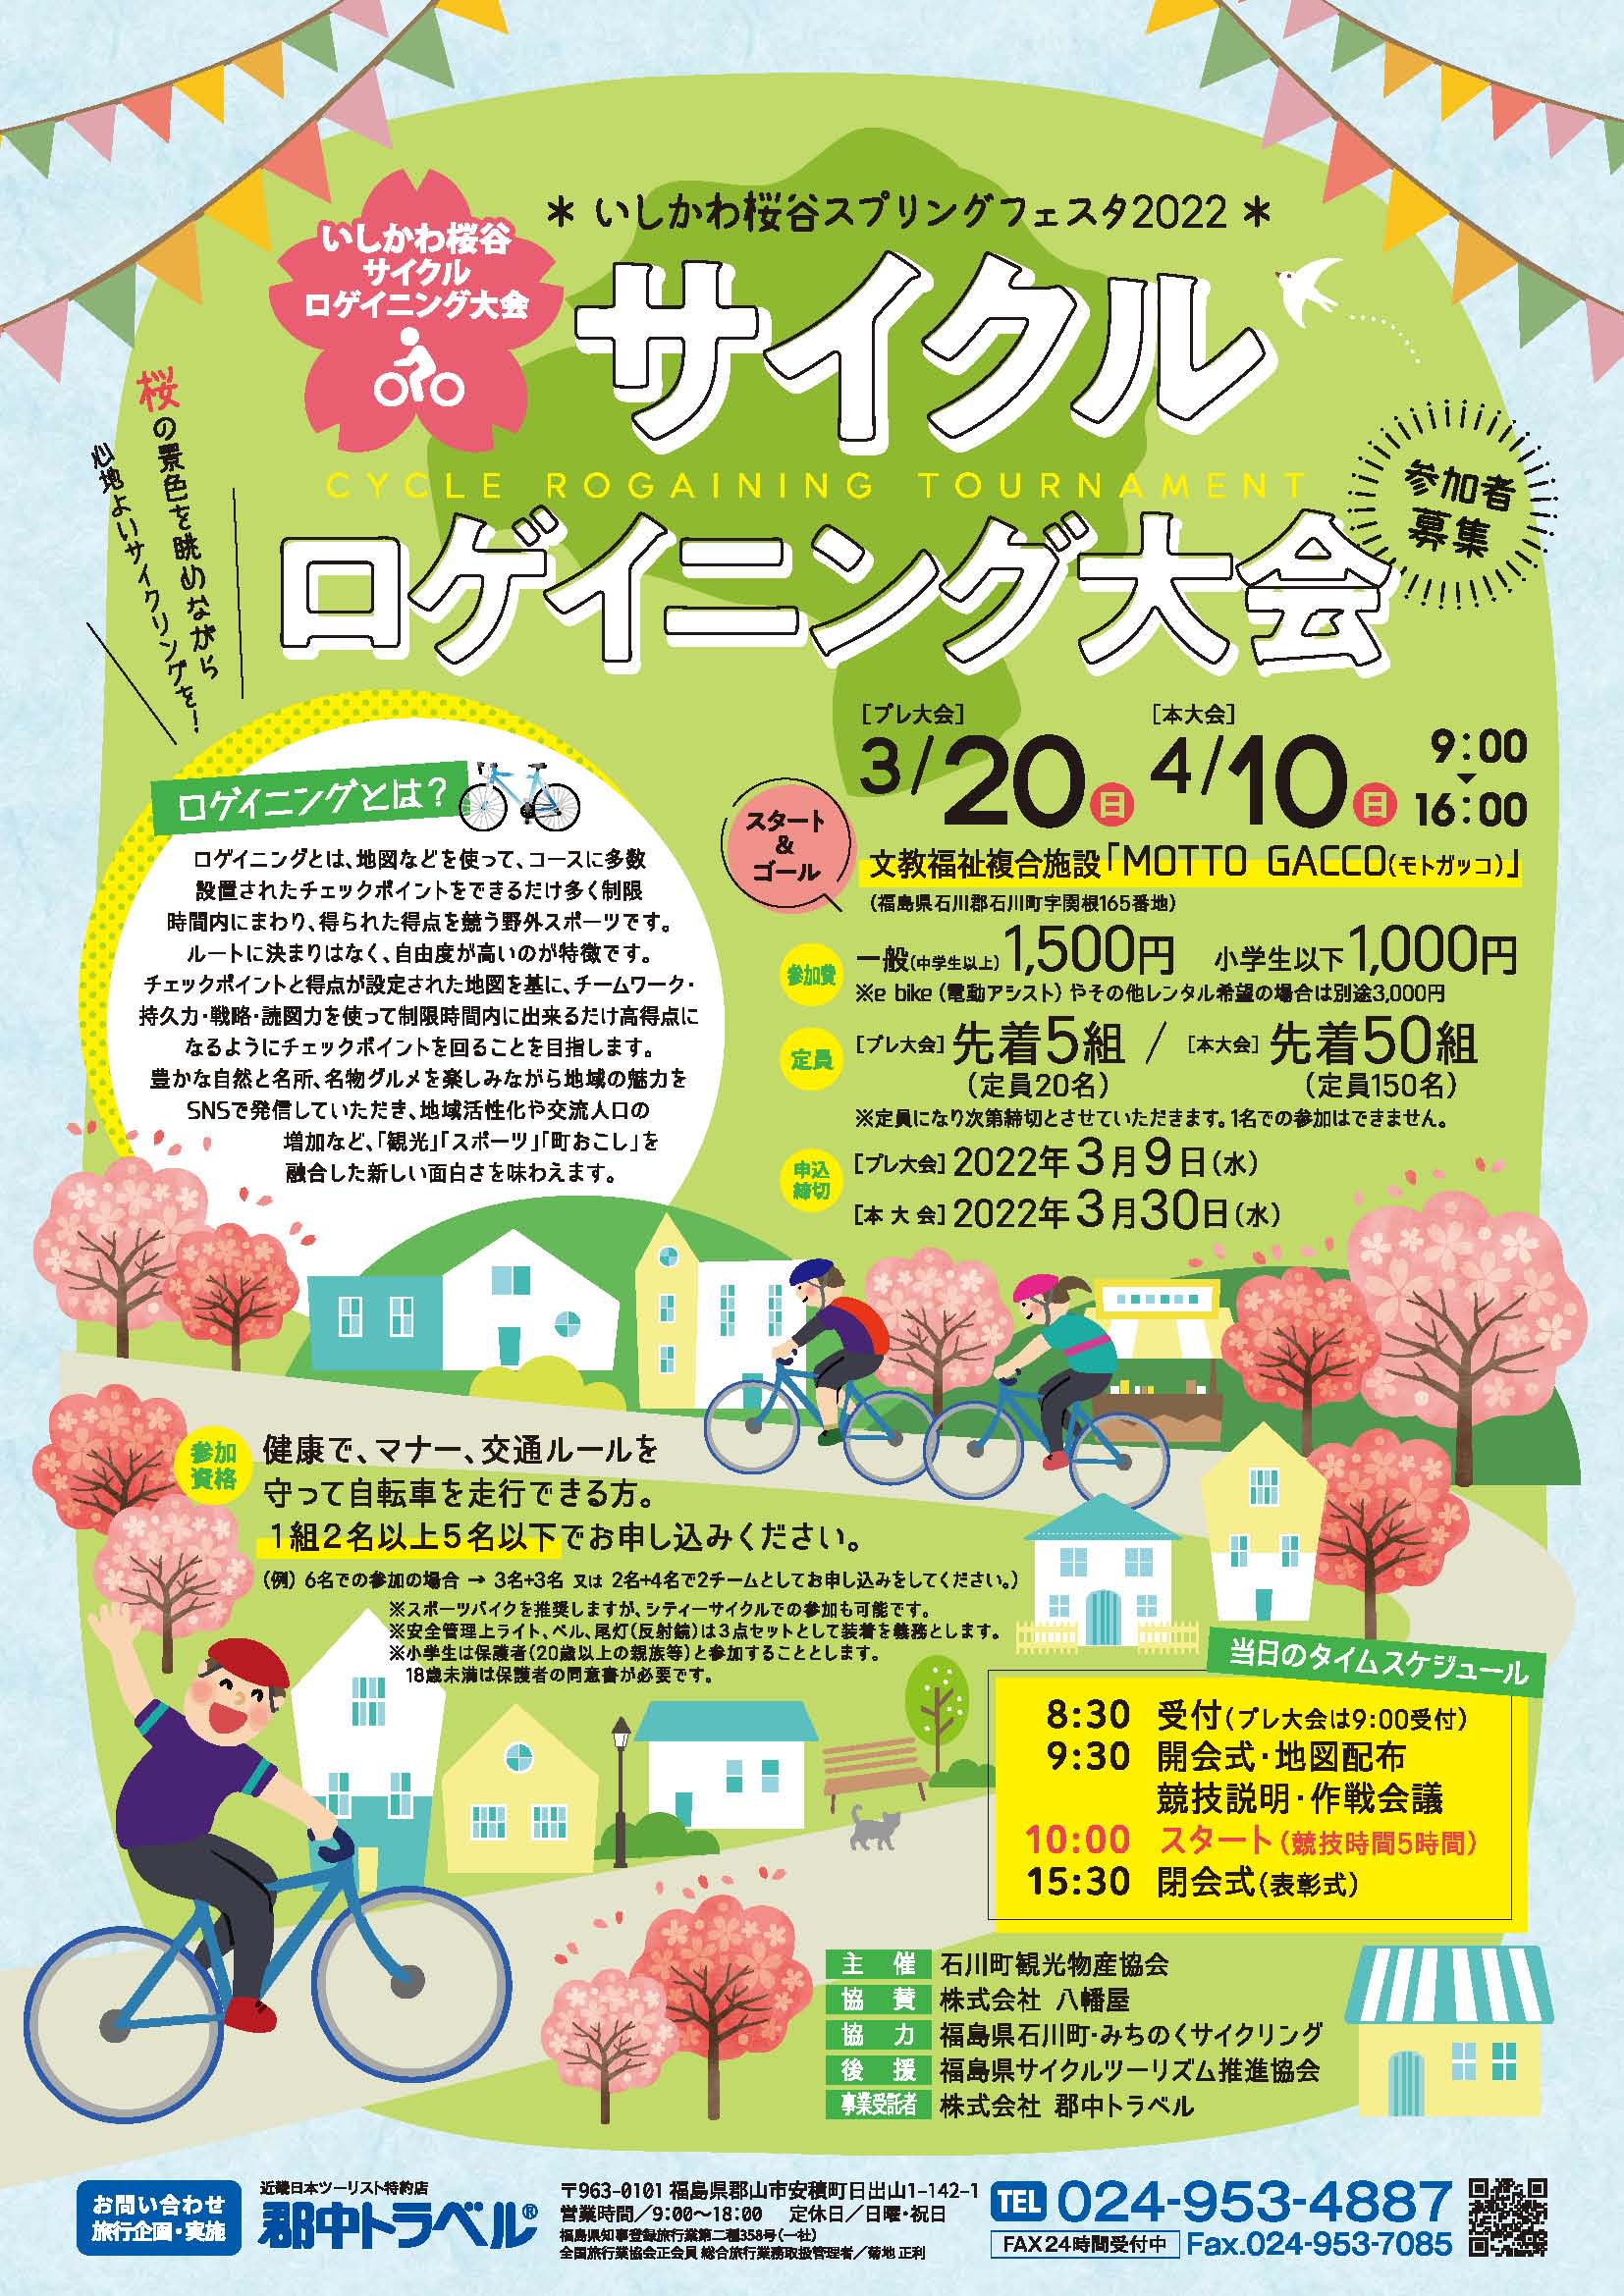 いしかわ桜谷サイクルロゲイニング大会　参加者募集！◆開催日3月20日（日）、4月10日（日）